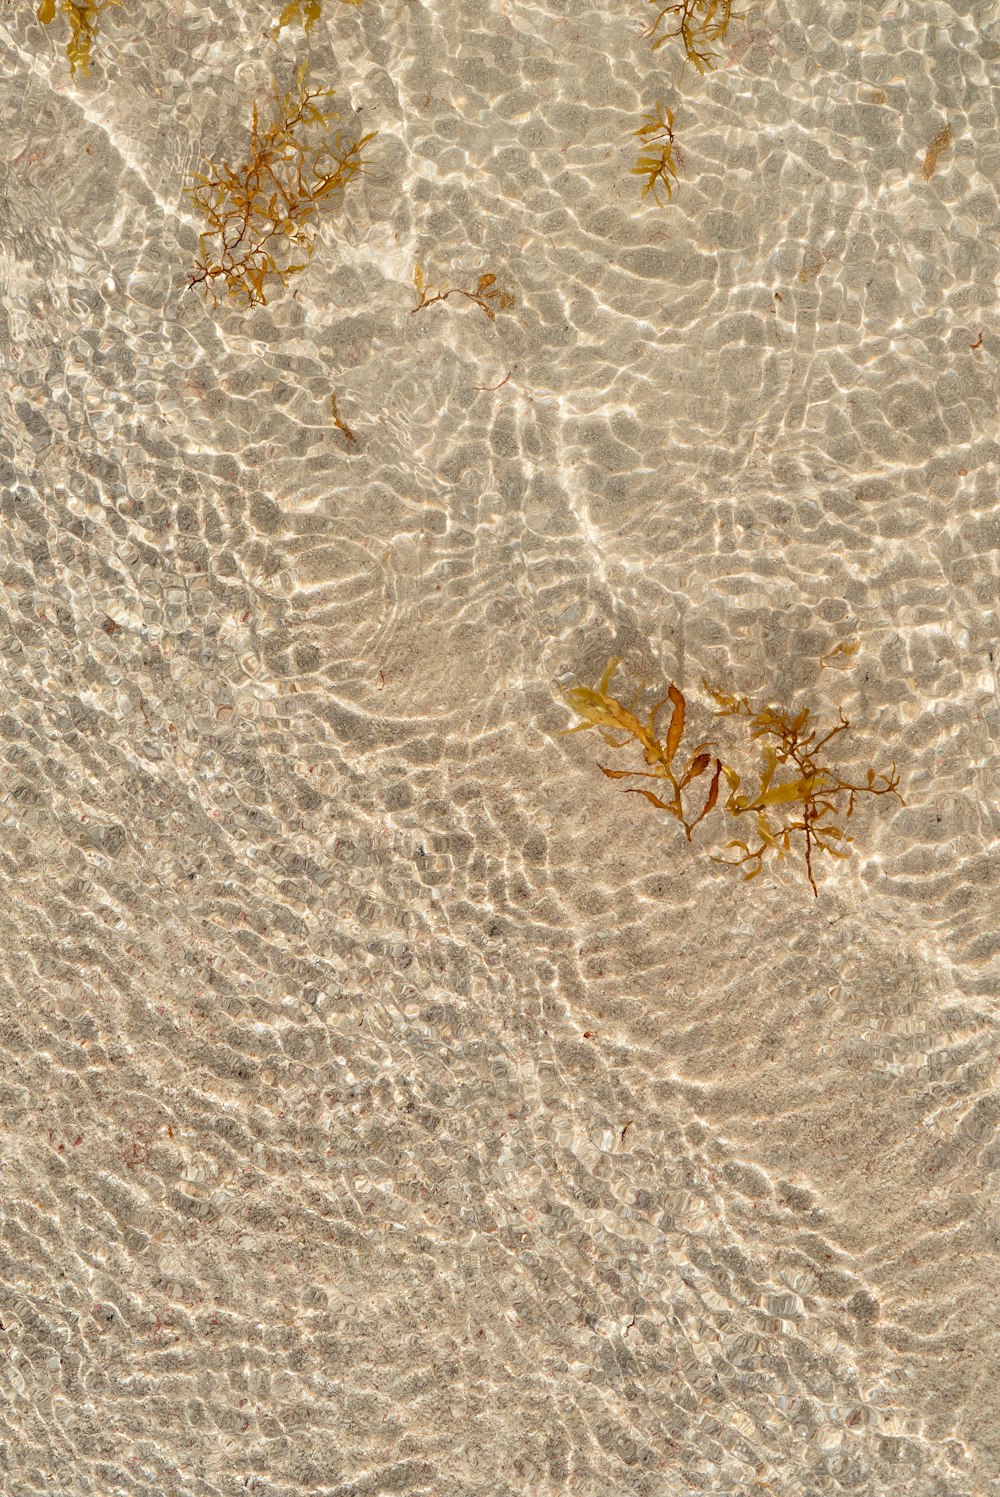 砂浜に浮かぶ海藻群